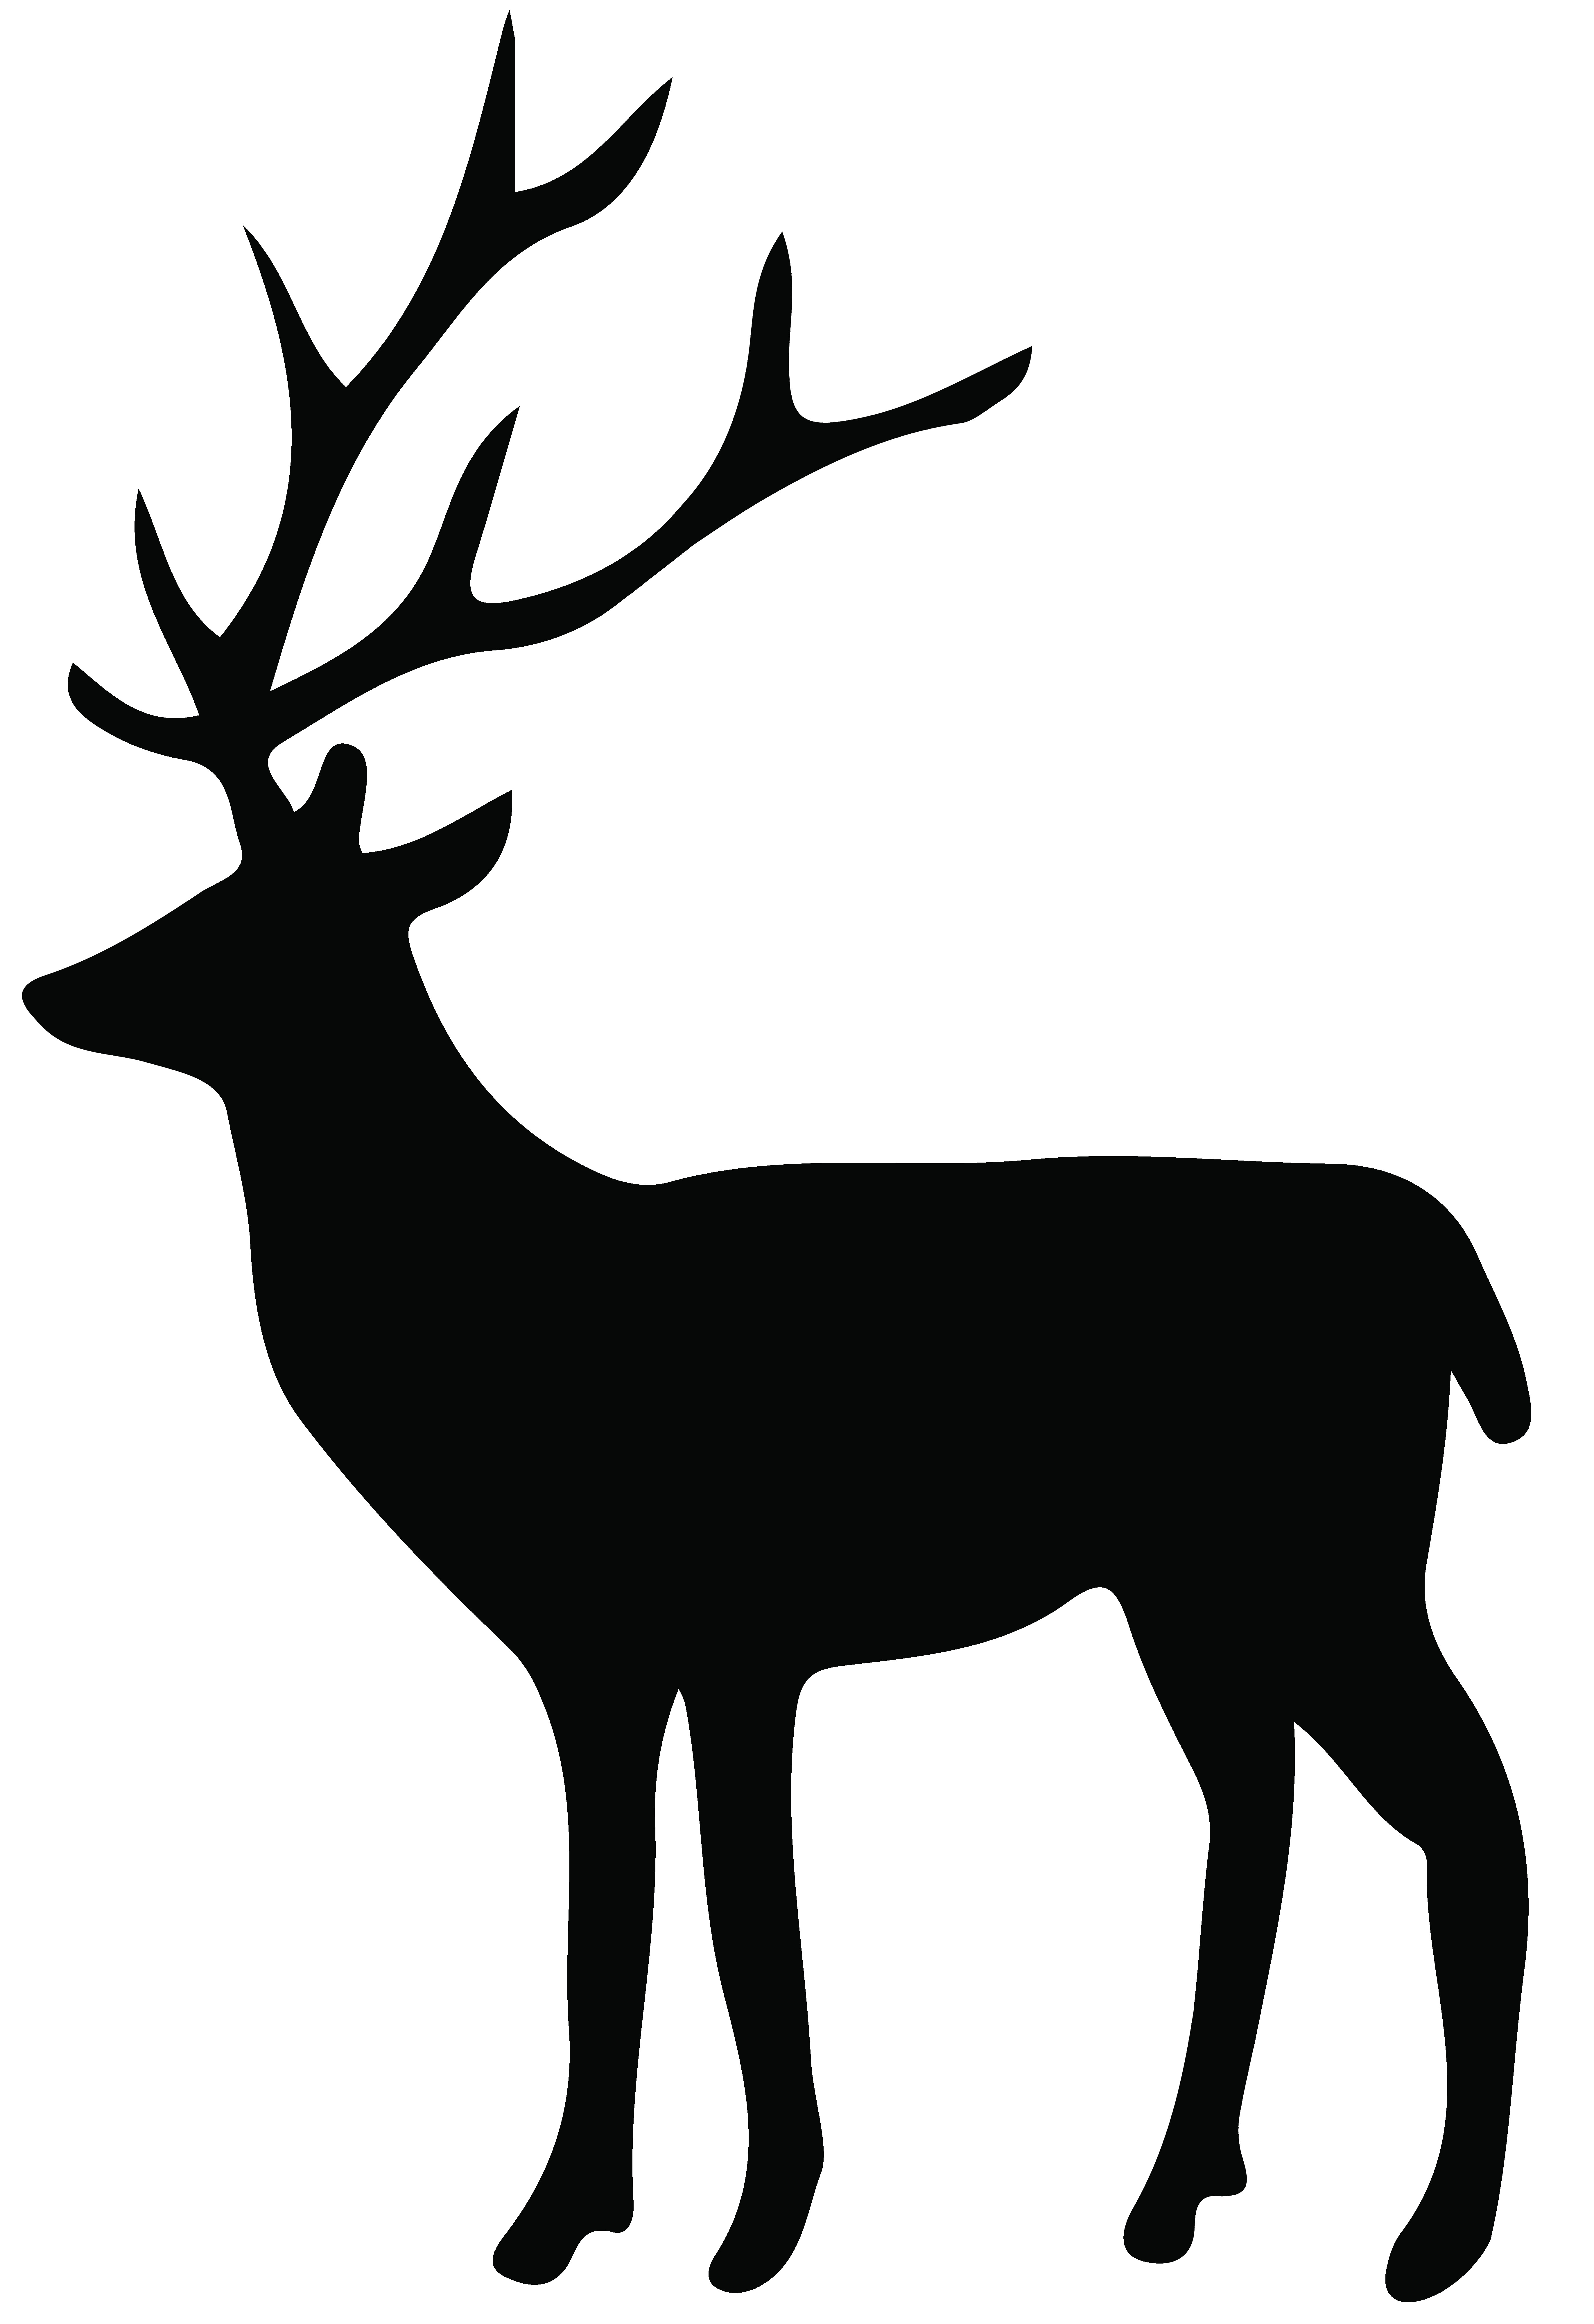 Deer Head Silhouette Printable at GetDrawings Free download